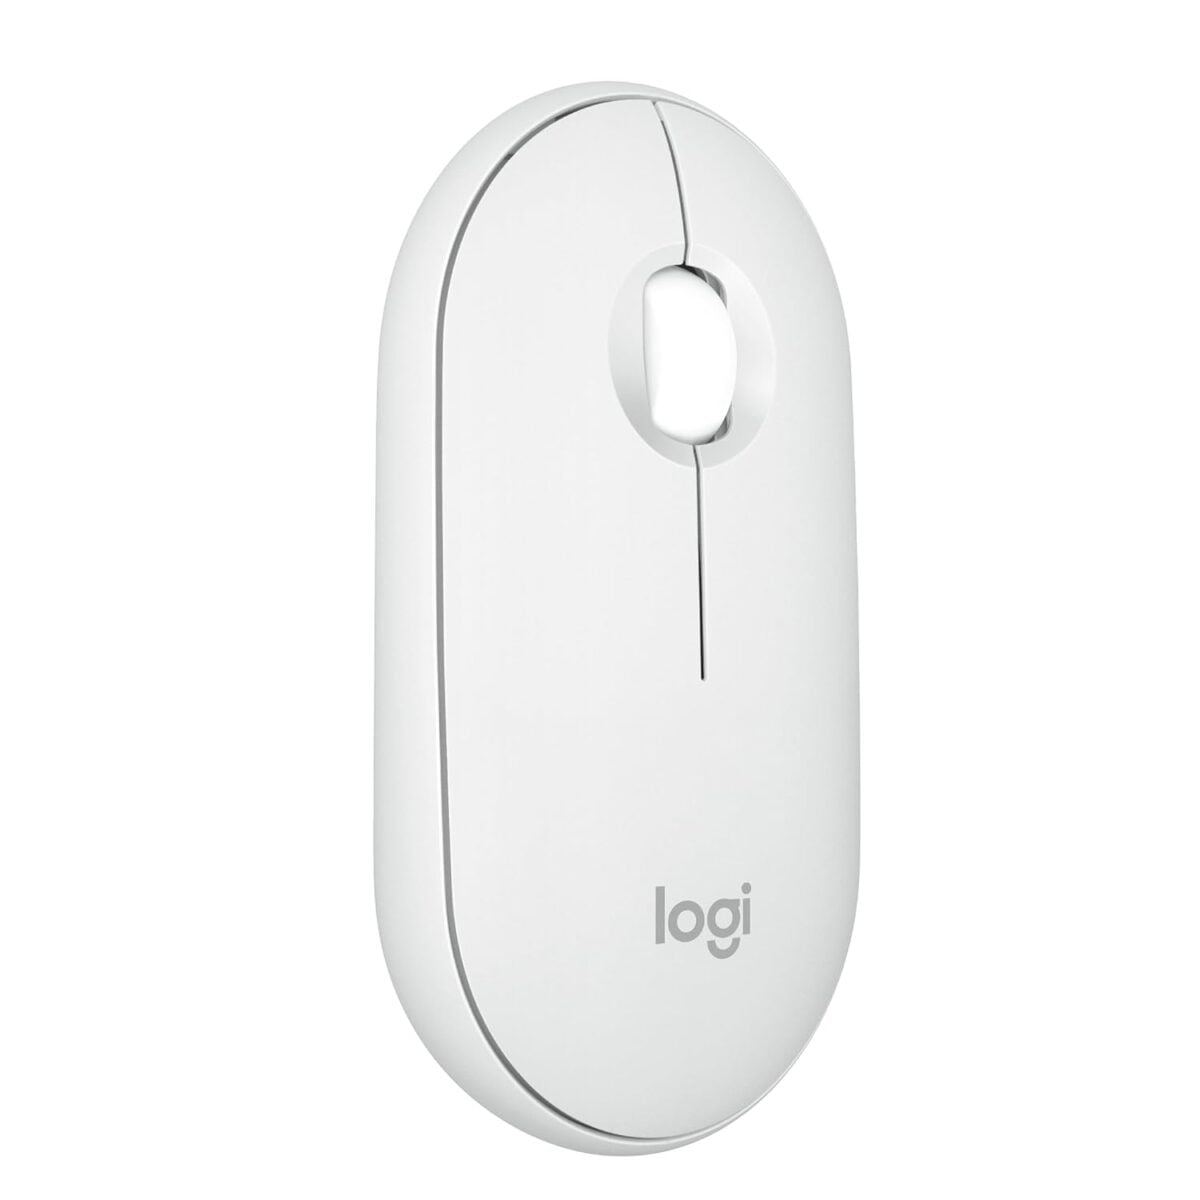 Logitech pebble mouse 2 m350s (white)